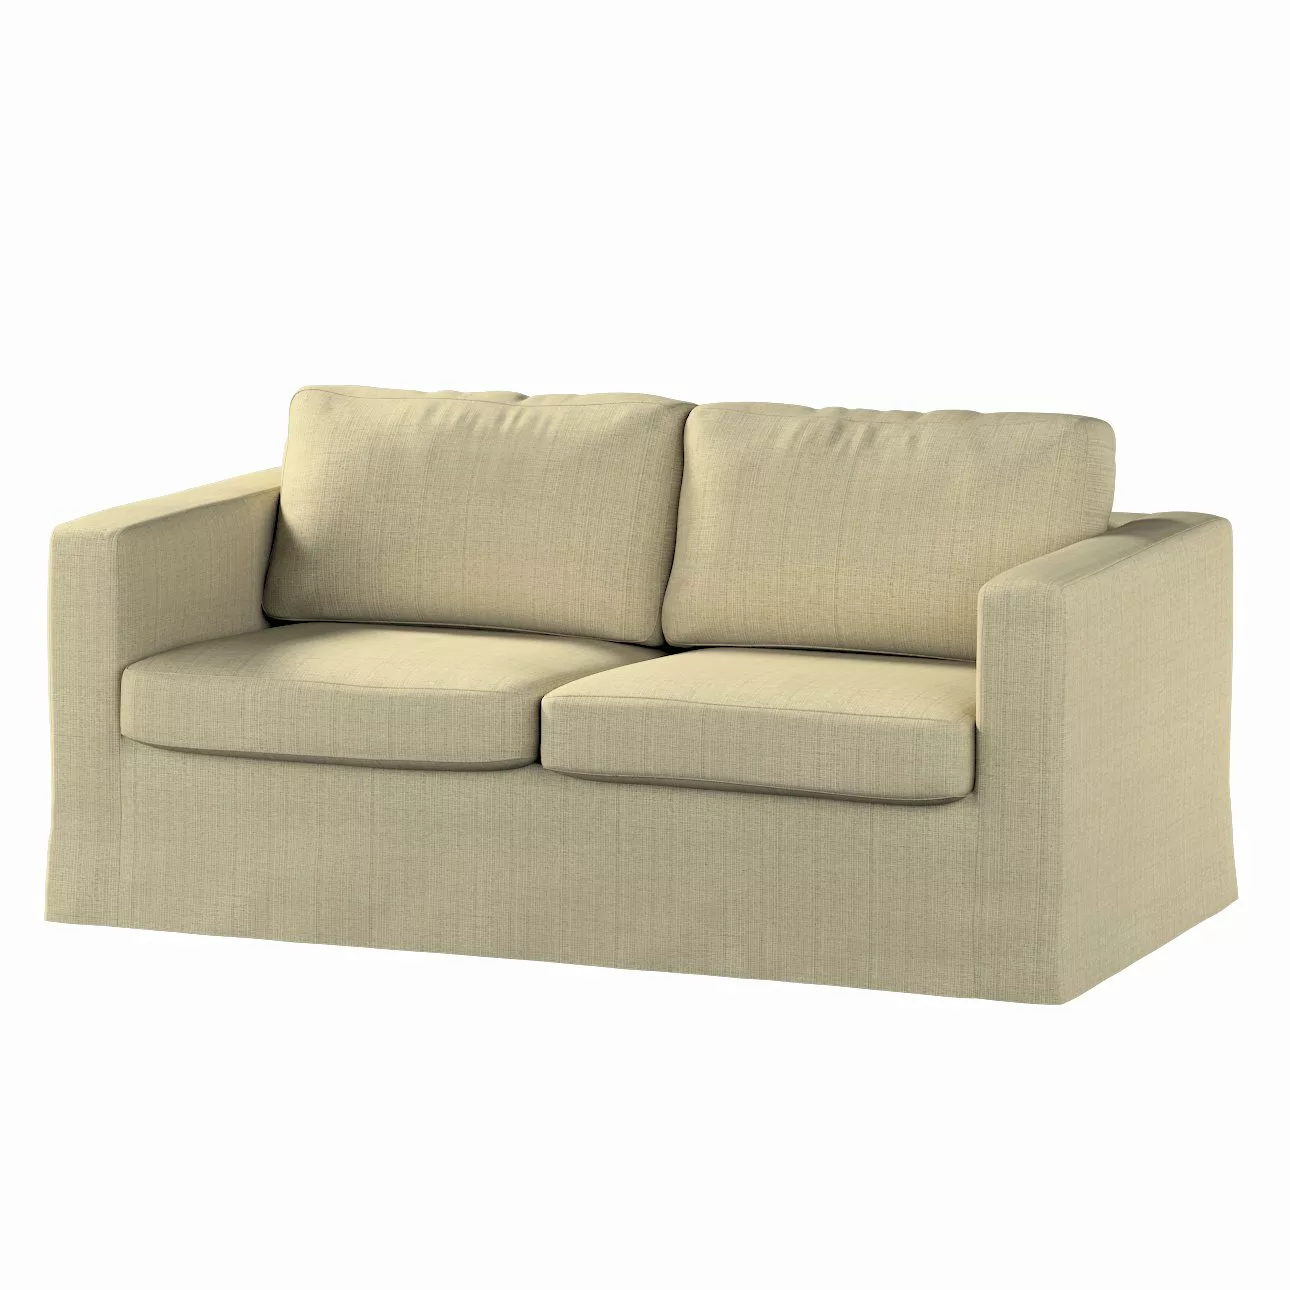 Bezug für Karlstad 2-Sitzer Sofa nicht ausklappbar, lang, beige-creme, Sofa günstig online kaufen